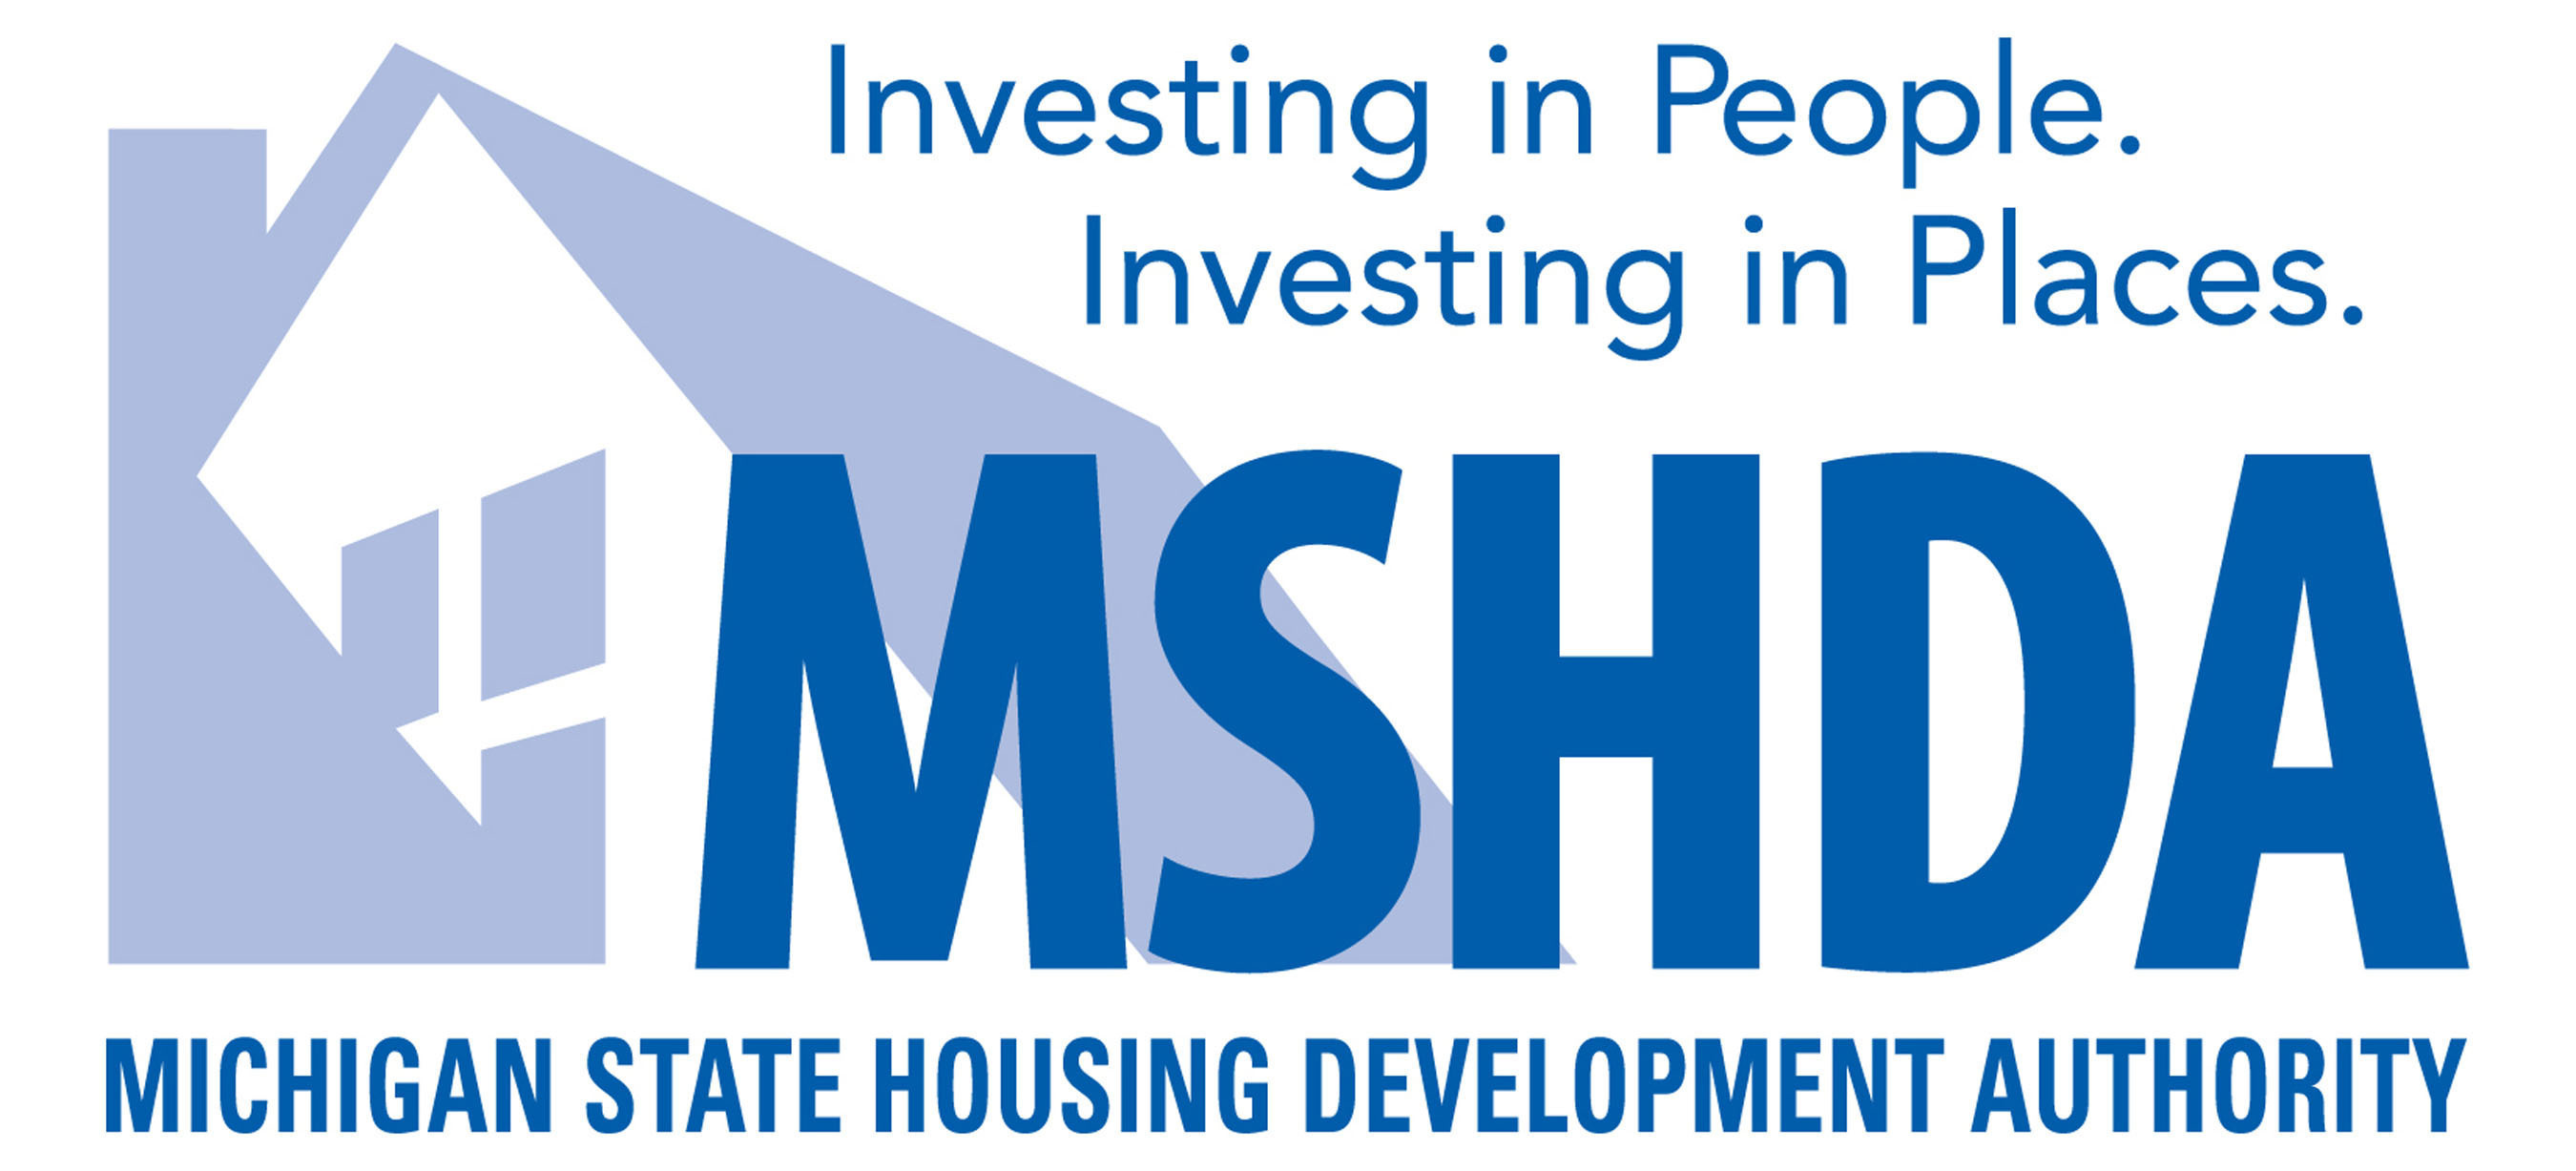 Michigan State Housing Development Authority Logo. (PRNewsFoto/Michigan State Housing Development Authority) (PRNewsFoto/)